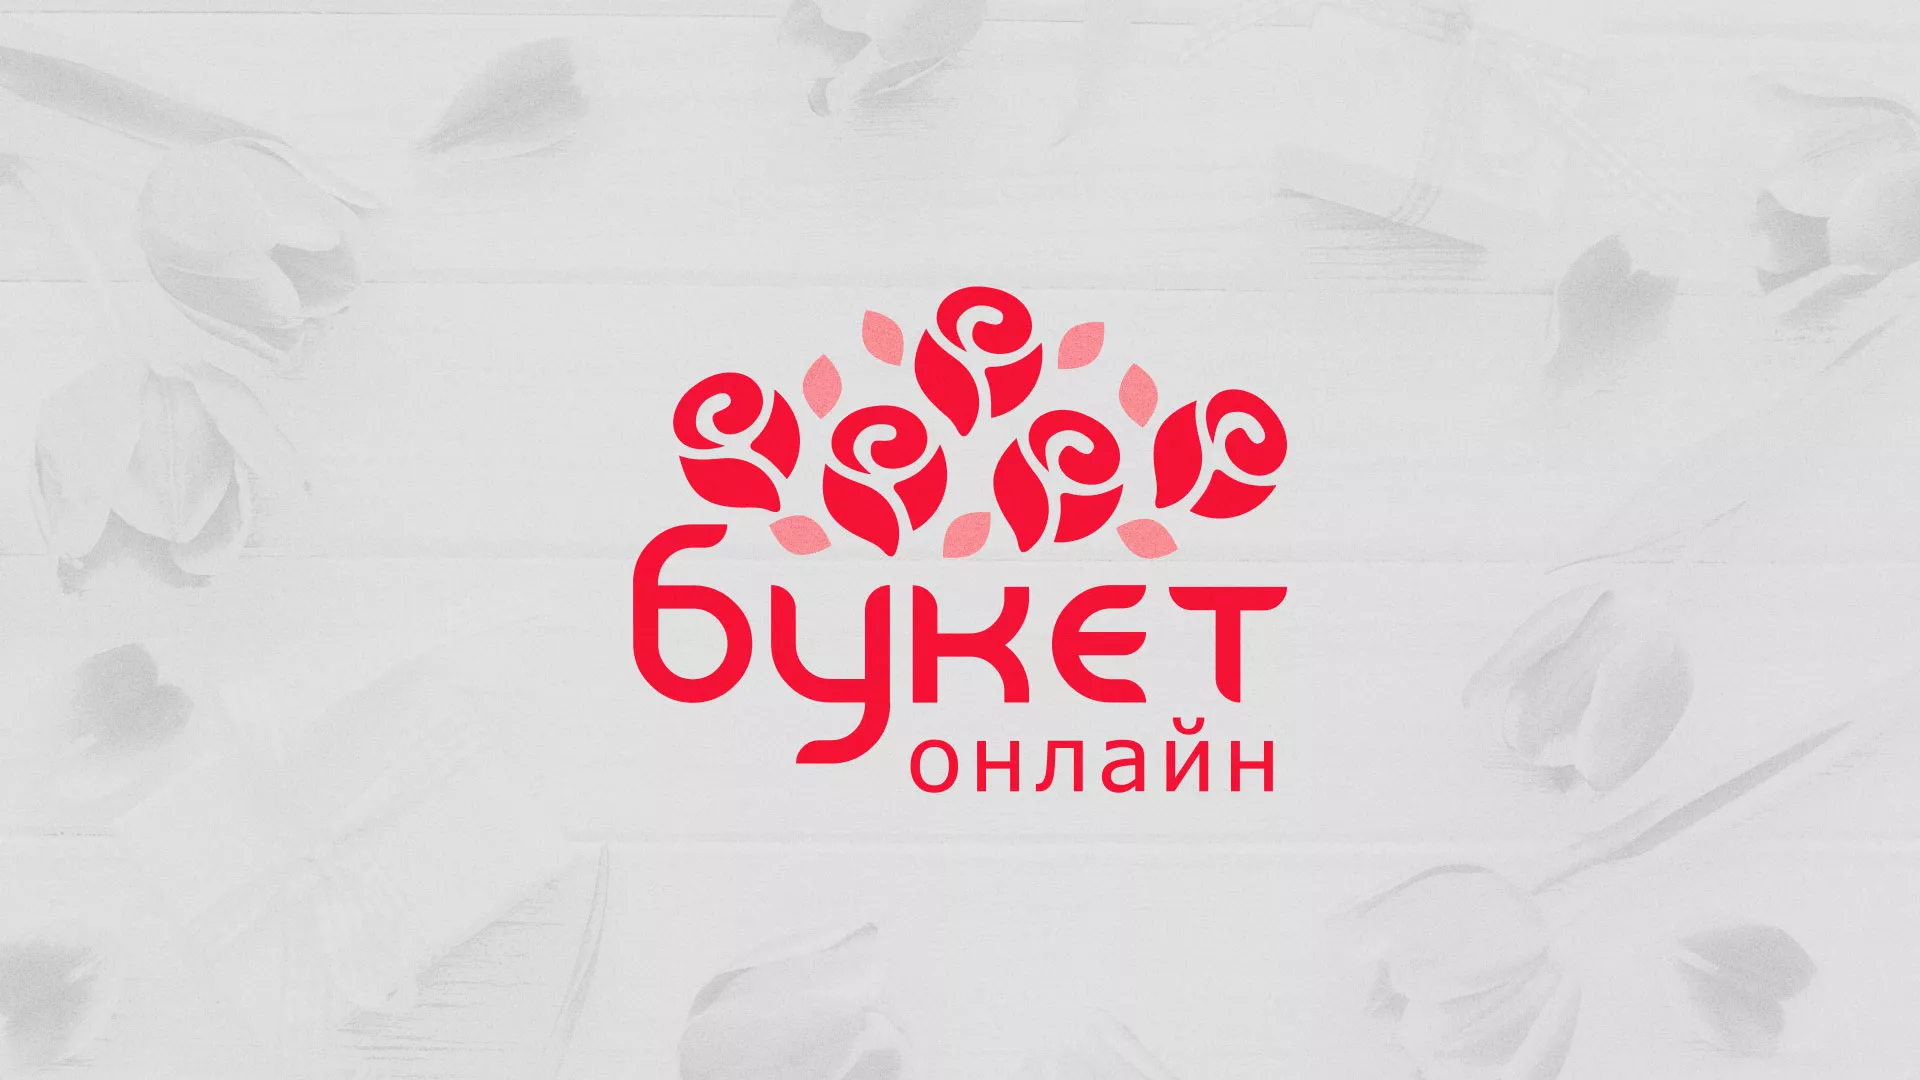 Создание интернет-магазина «Букет-онлайн» по цветам в Володарске